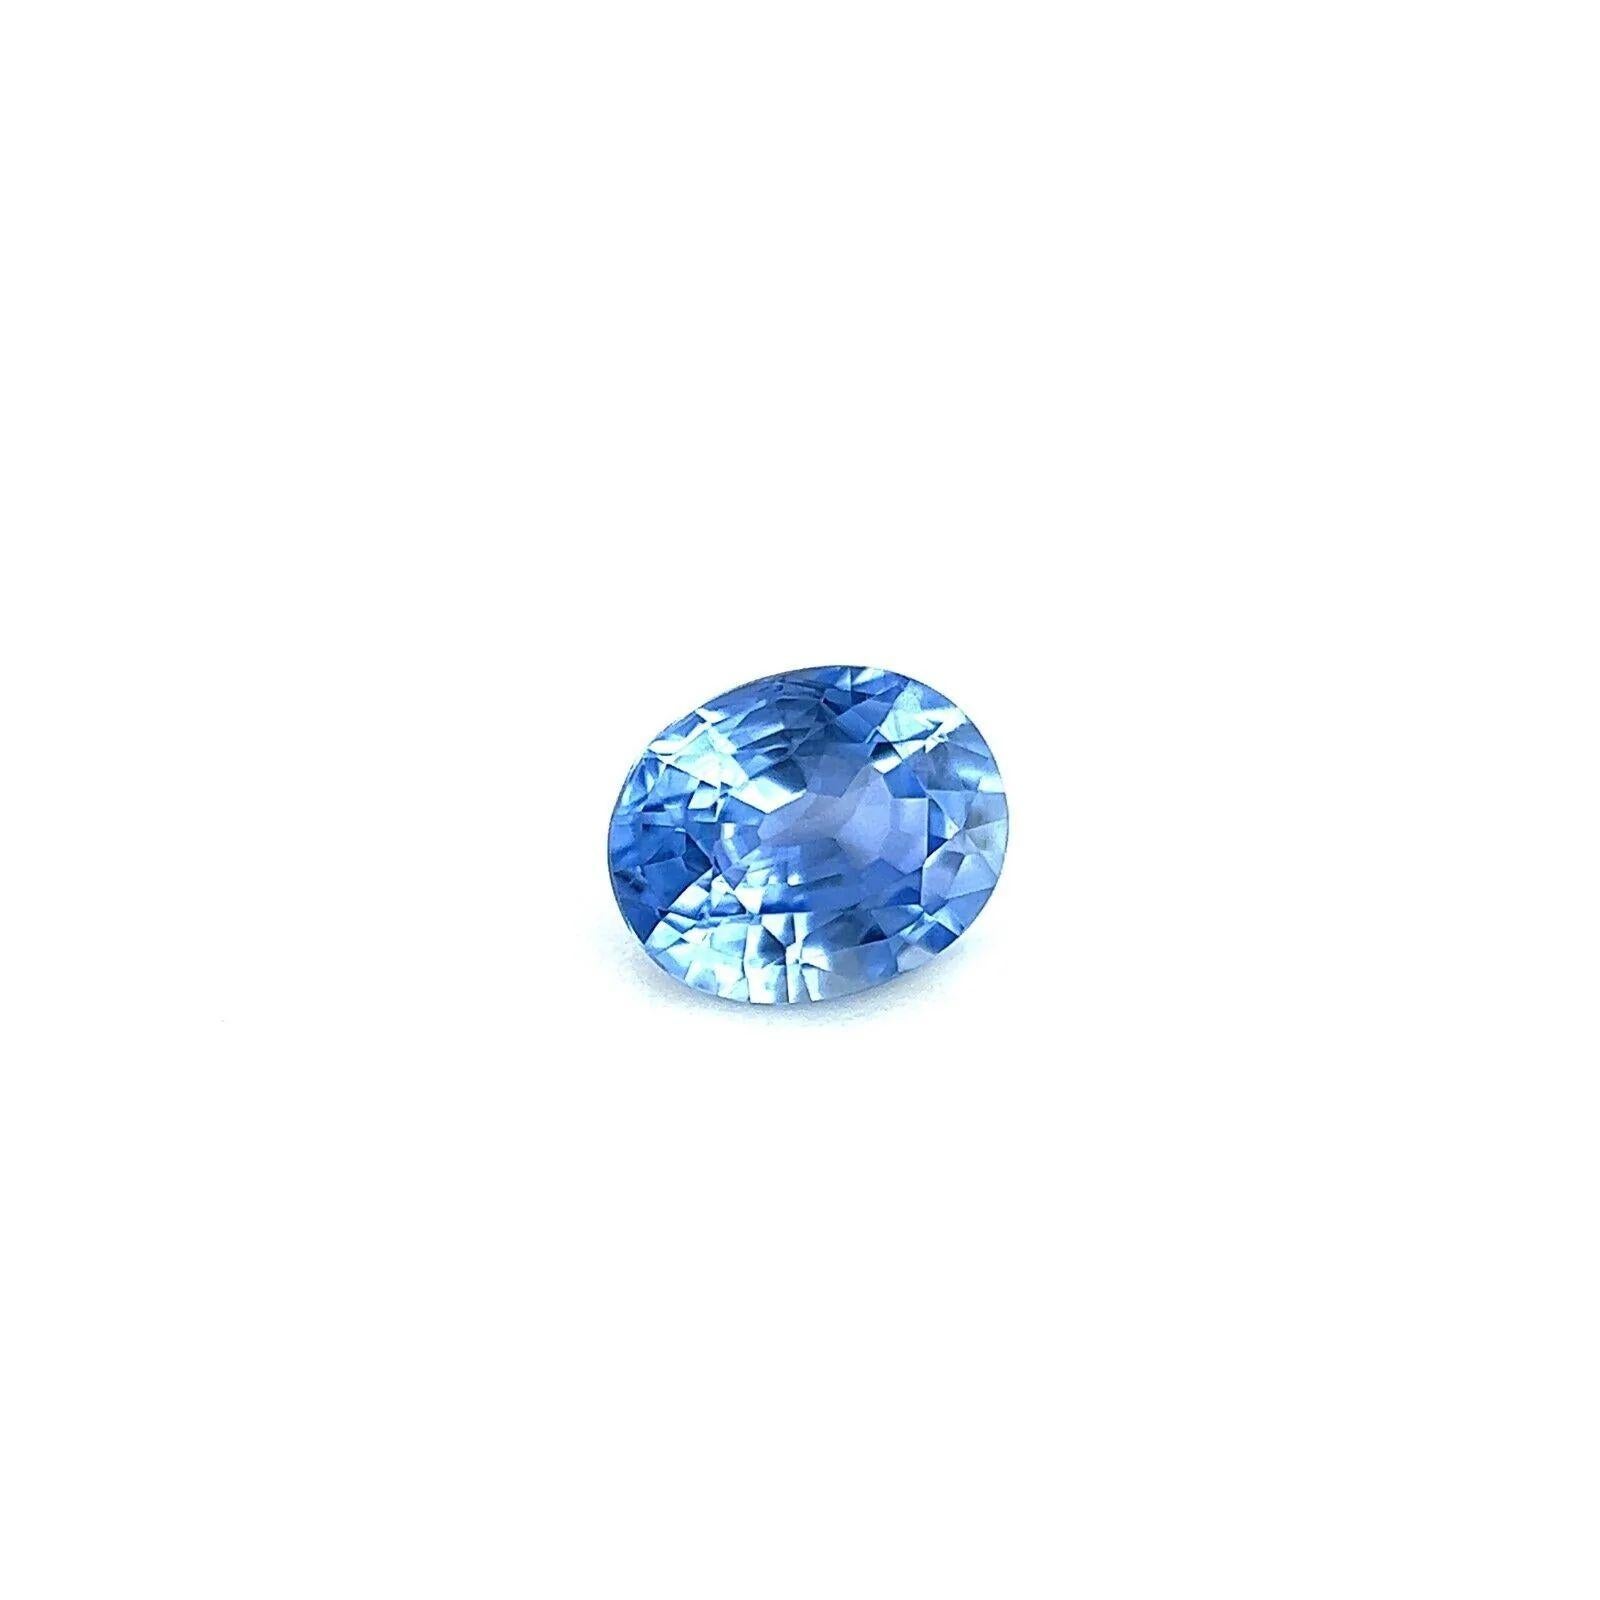 0.69ct Saphir bleu de Ceylan naturel et vif Taille ovale pierre précieuse du Sri Lanka 5.8x4.7mm

Fine pierre précieuse Ceylan Sapphire bleu vif naturel.
0,69 carat avec une belle couleur bleu vif et une très bonne clarté, une pierre très